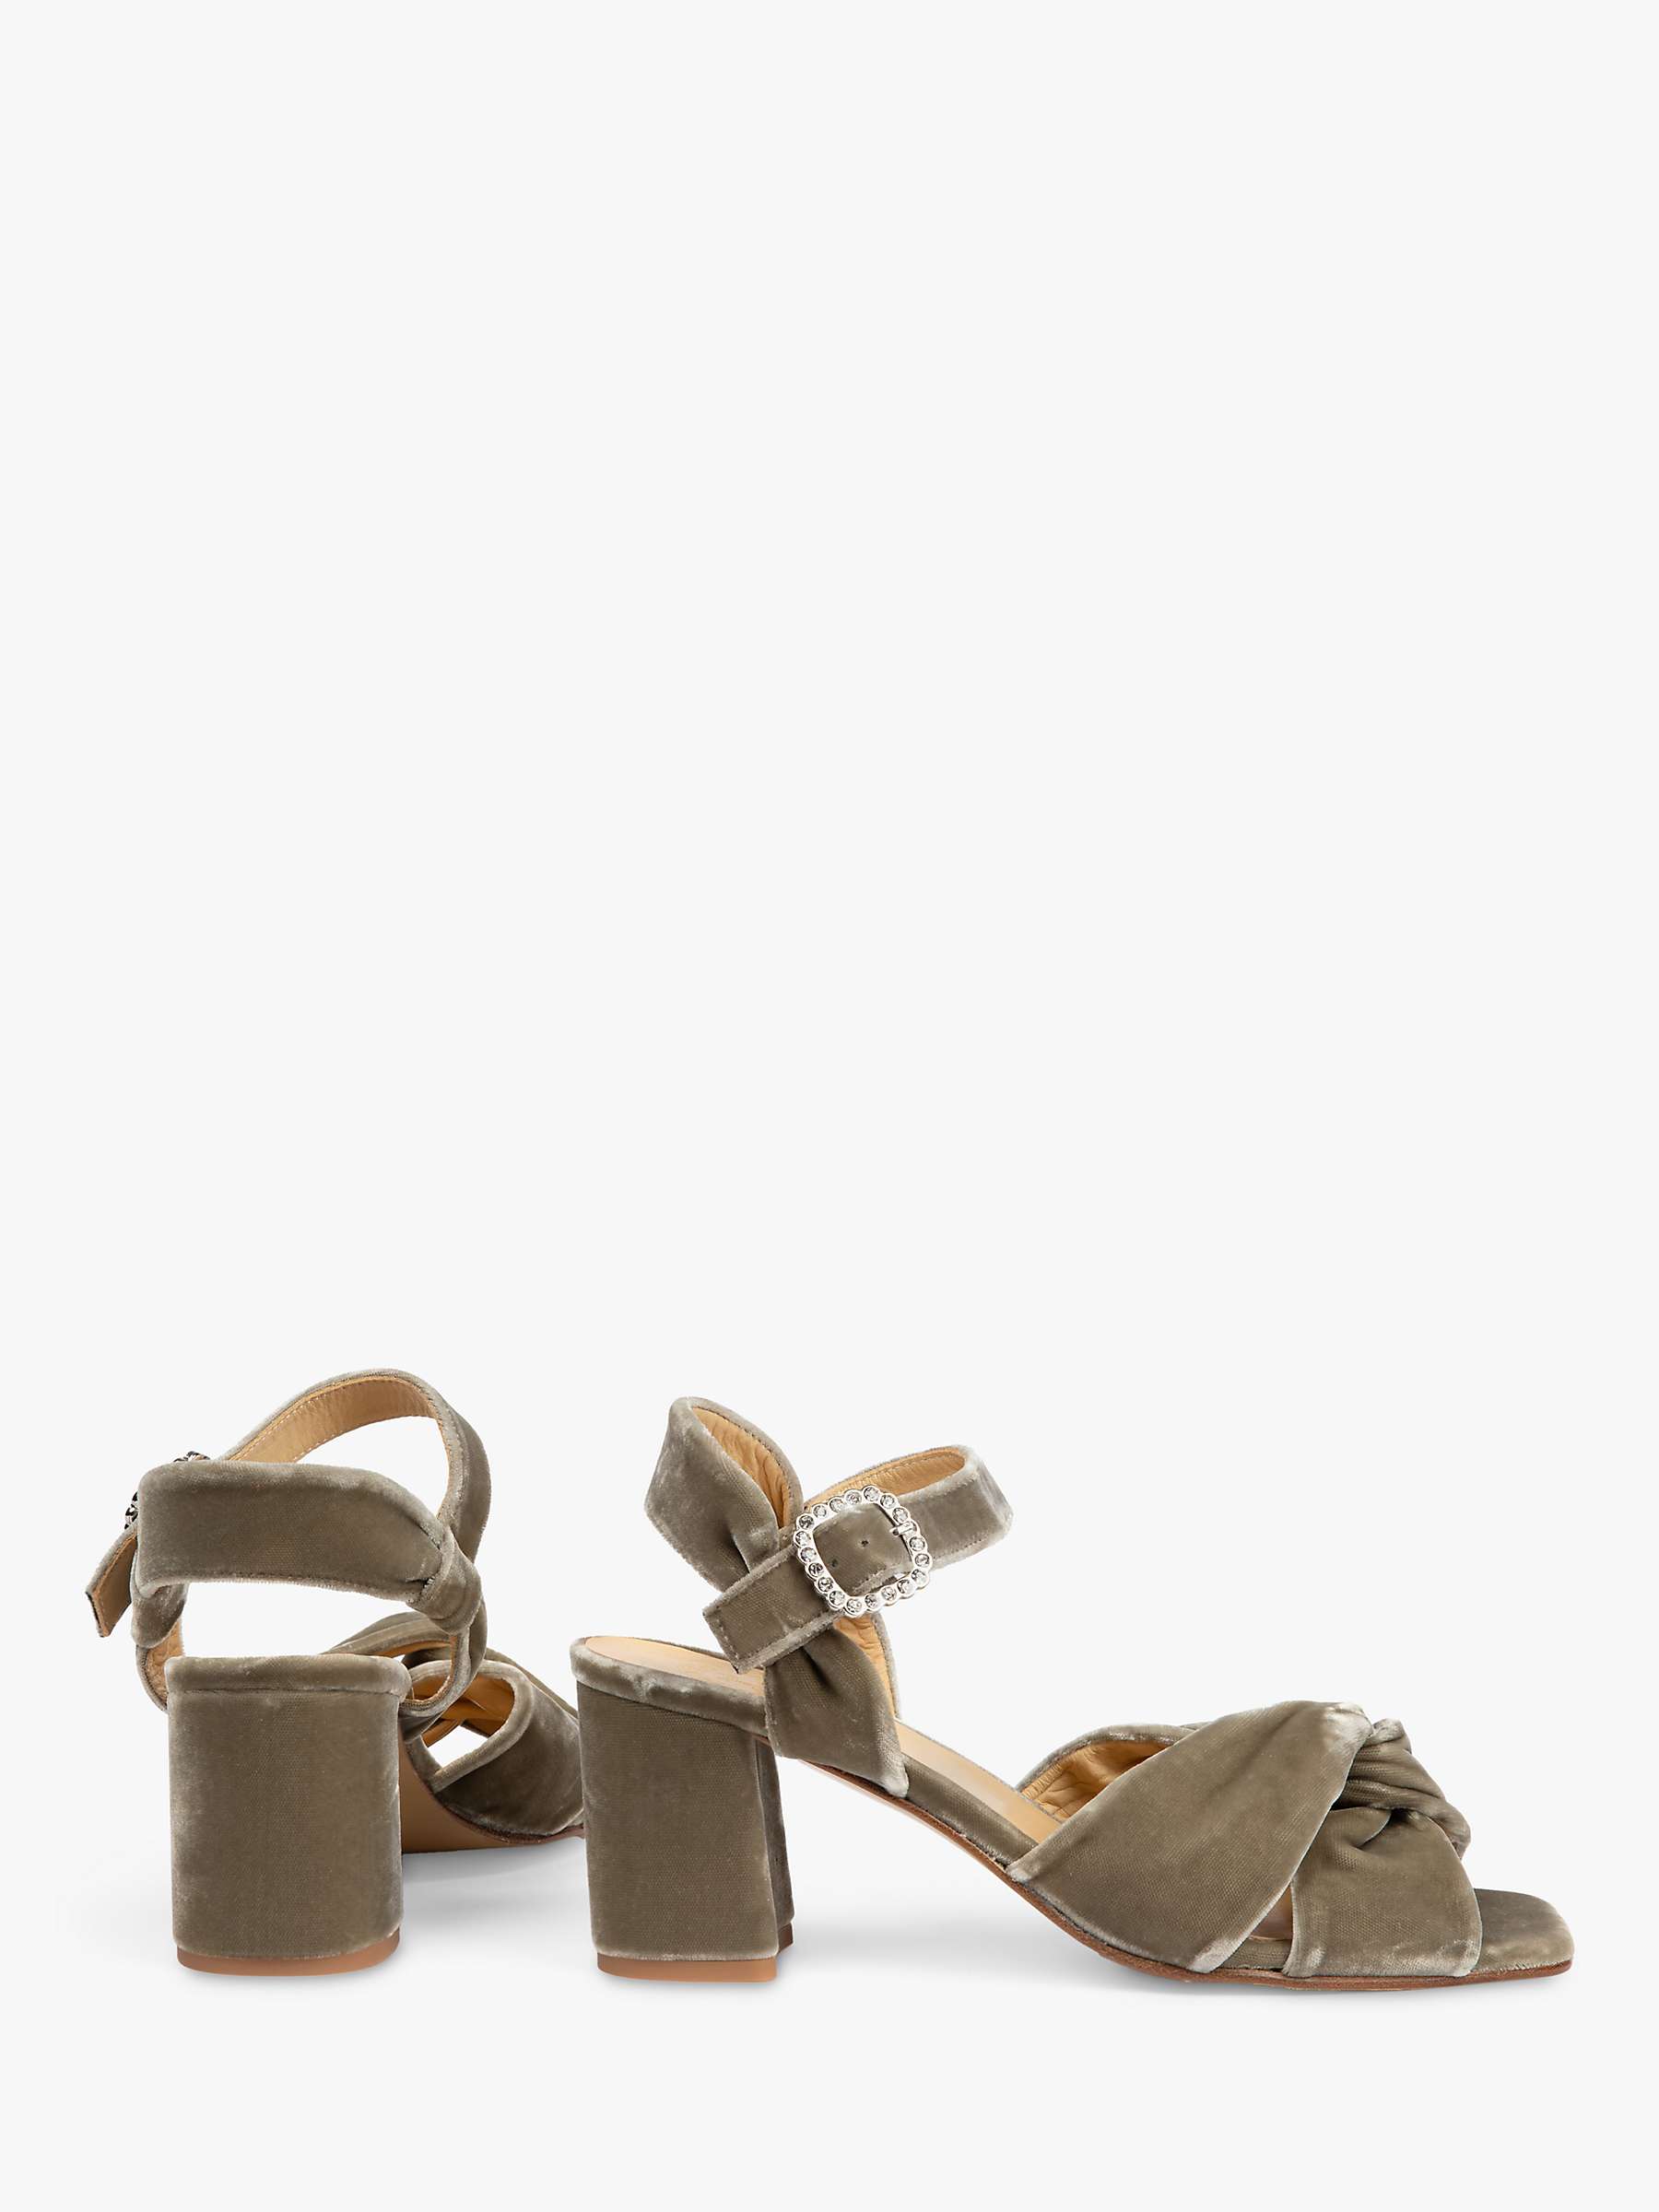 Buy Penelope Chilvers Infinity Velvet Block Heel Sandals, Putty Online at johnlewis.com